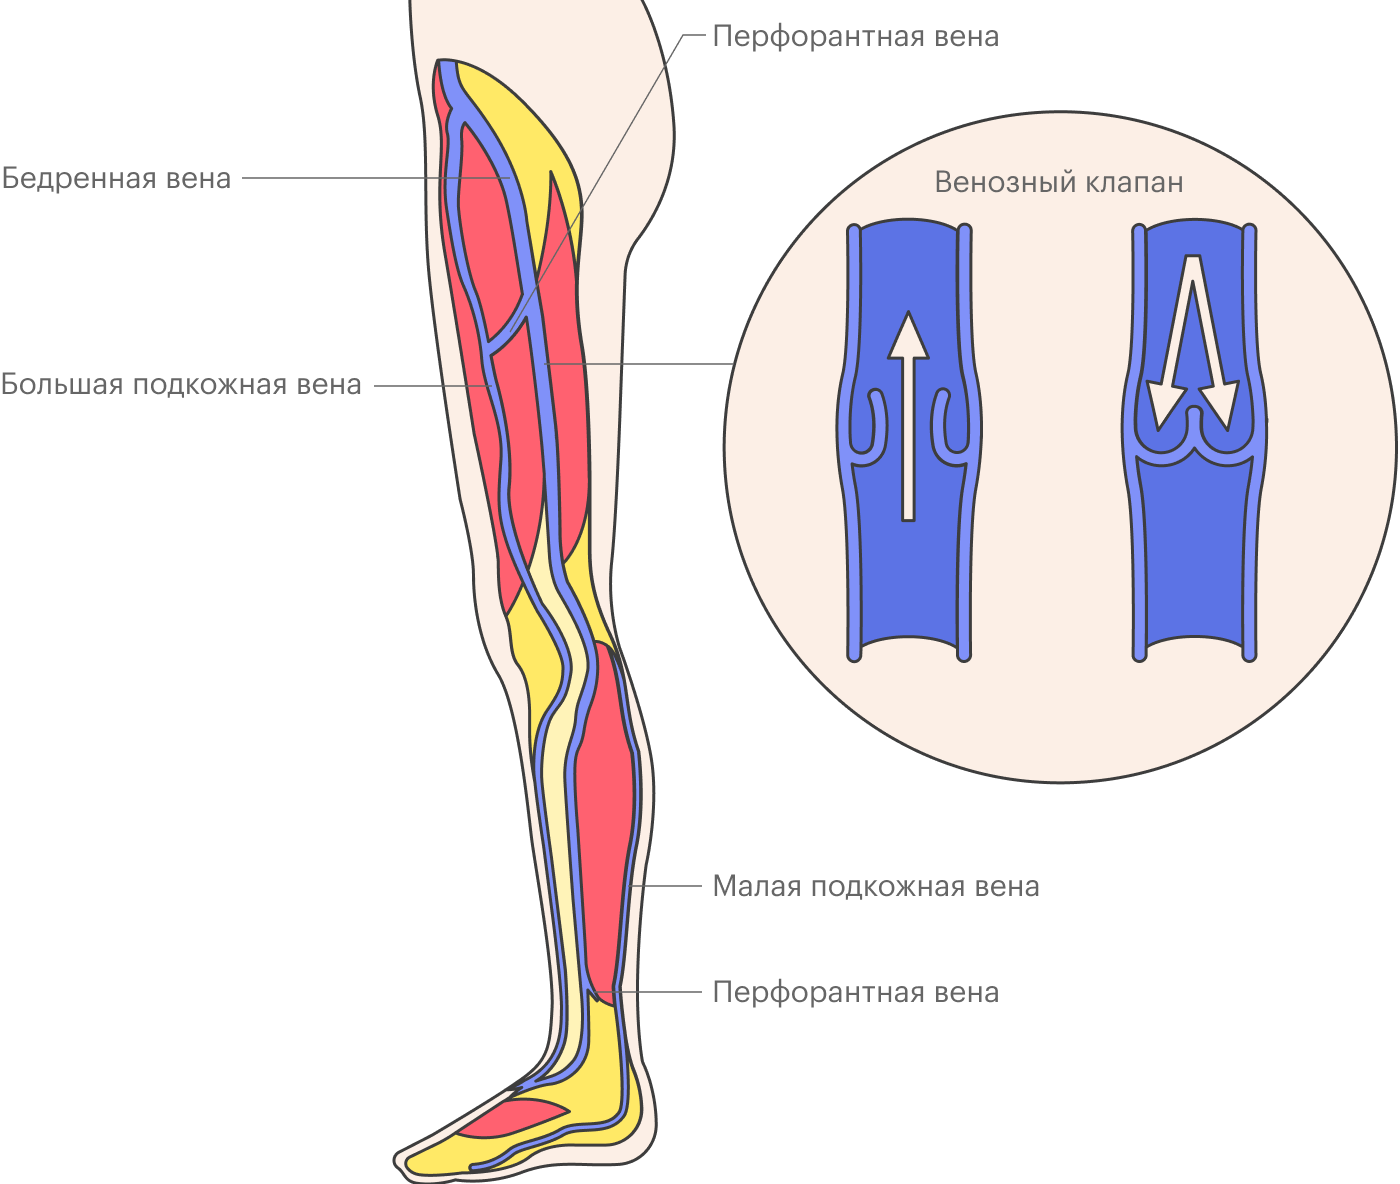 Вены ног делят на глубокие и поверхностные, они связаны перфорантными венами. Большая подкожная вена и малая подкожная вена — поверхностные вены, которые чаще всего становятся «источником» варикоза, а бедренная вена — это осевая глубокая вена. При варикозном расширении поверхностных вен происходит выброс — «утечка» крови — из глубоких вен в поверхностные в местах их соединений или по перемычкам — перфорантным венам. Также внутри вен есть клапаны, мешающие крови двигаться вниз. При варикозном расширении поверхностных вен клапаны деформируются и разрушаются, постепенно развивается венозная недостаточность. Недостаточность клапанов может быть и в глубоких венах, но встречается такое реже